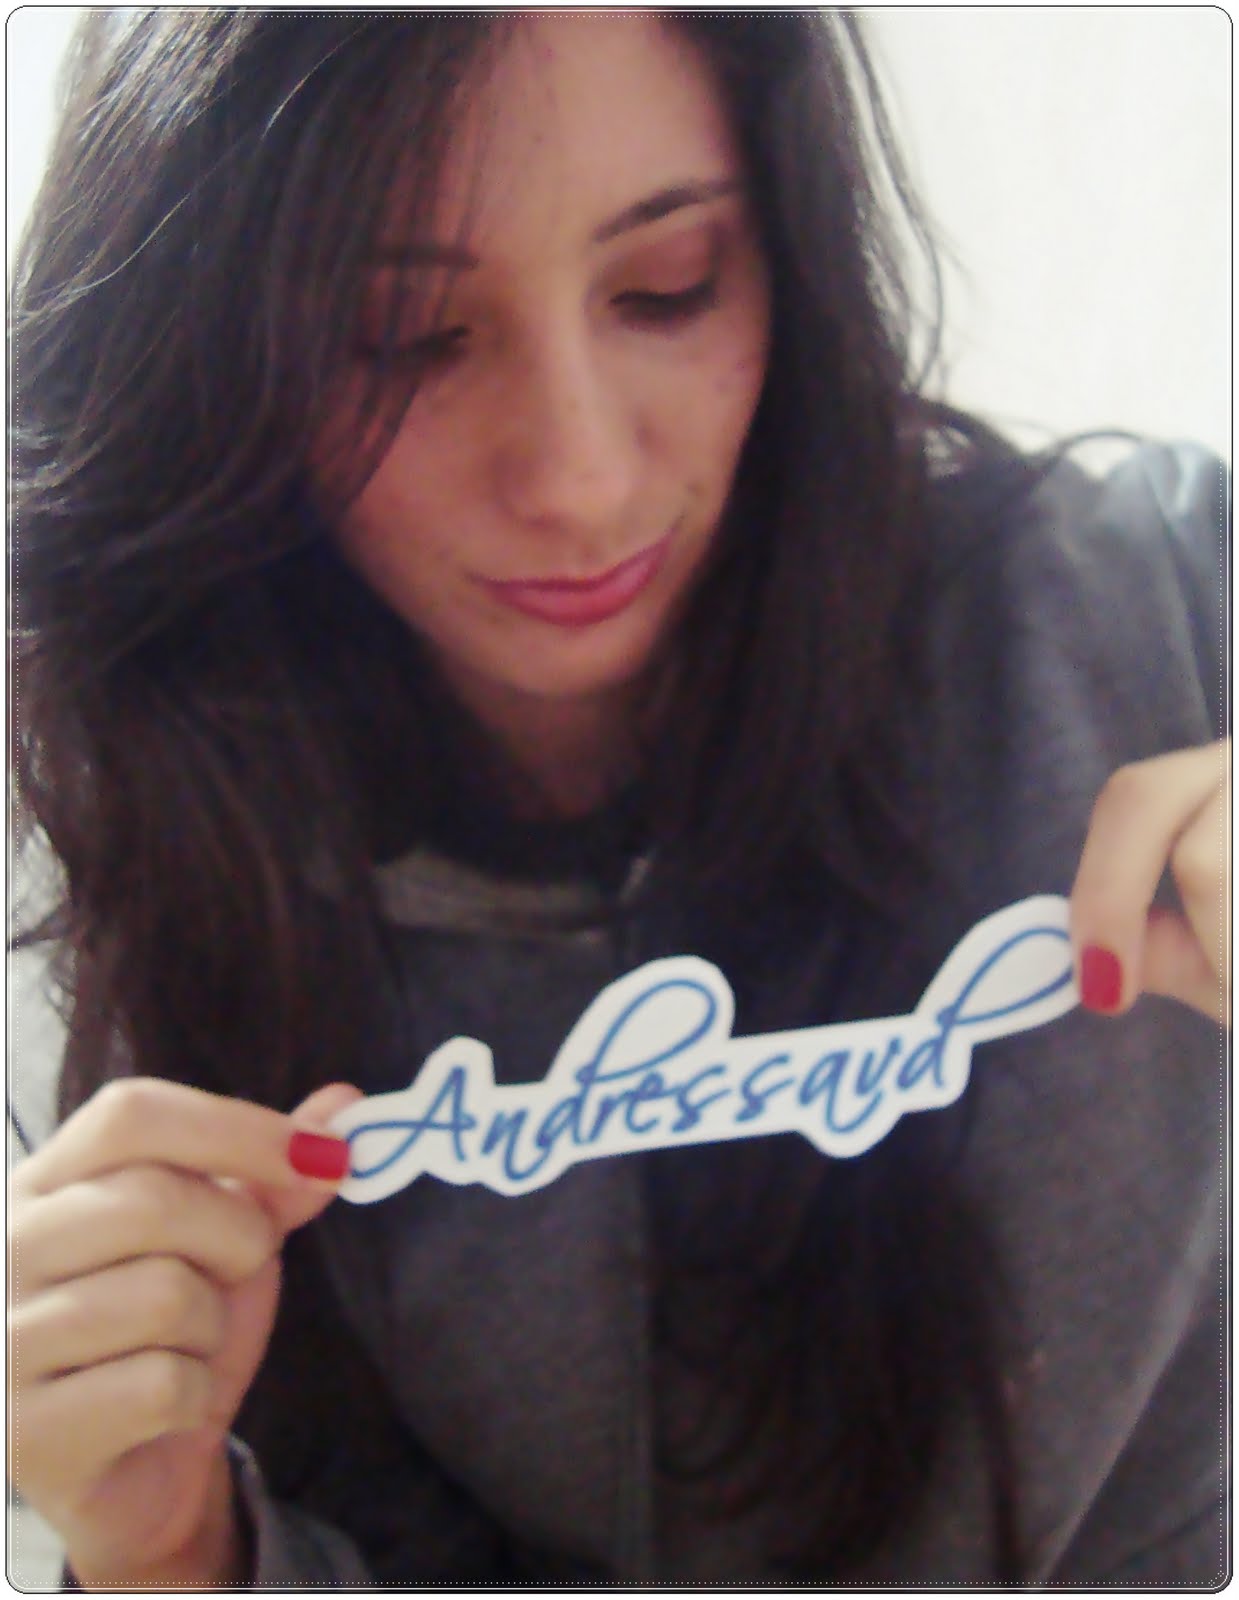 Andressa - YouTube